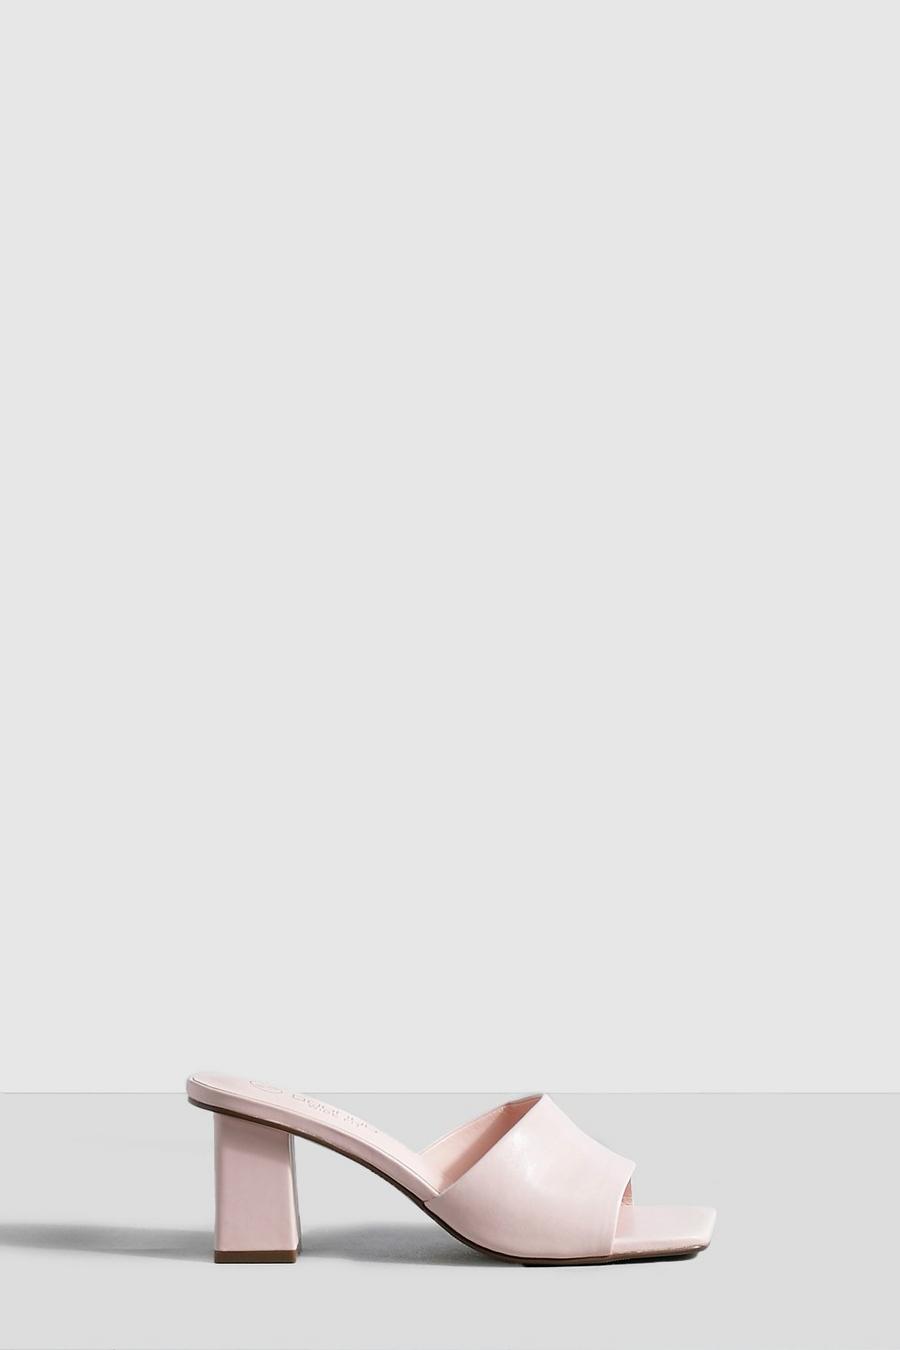 Breite Passform Mules mit Blockabsatz, Baby pink